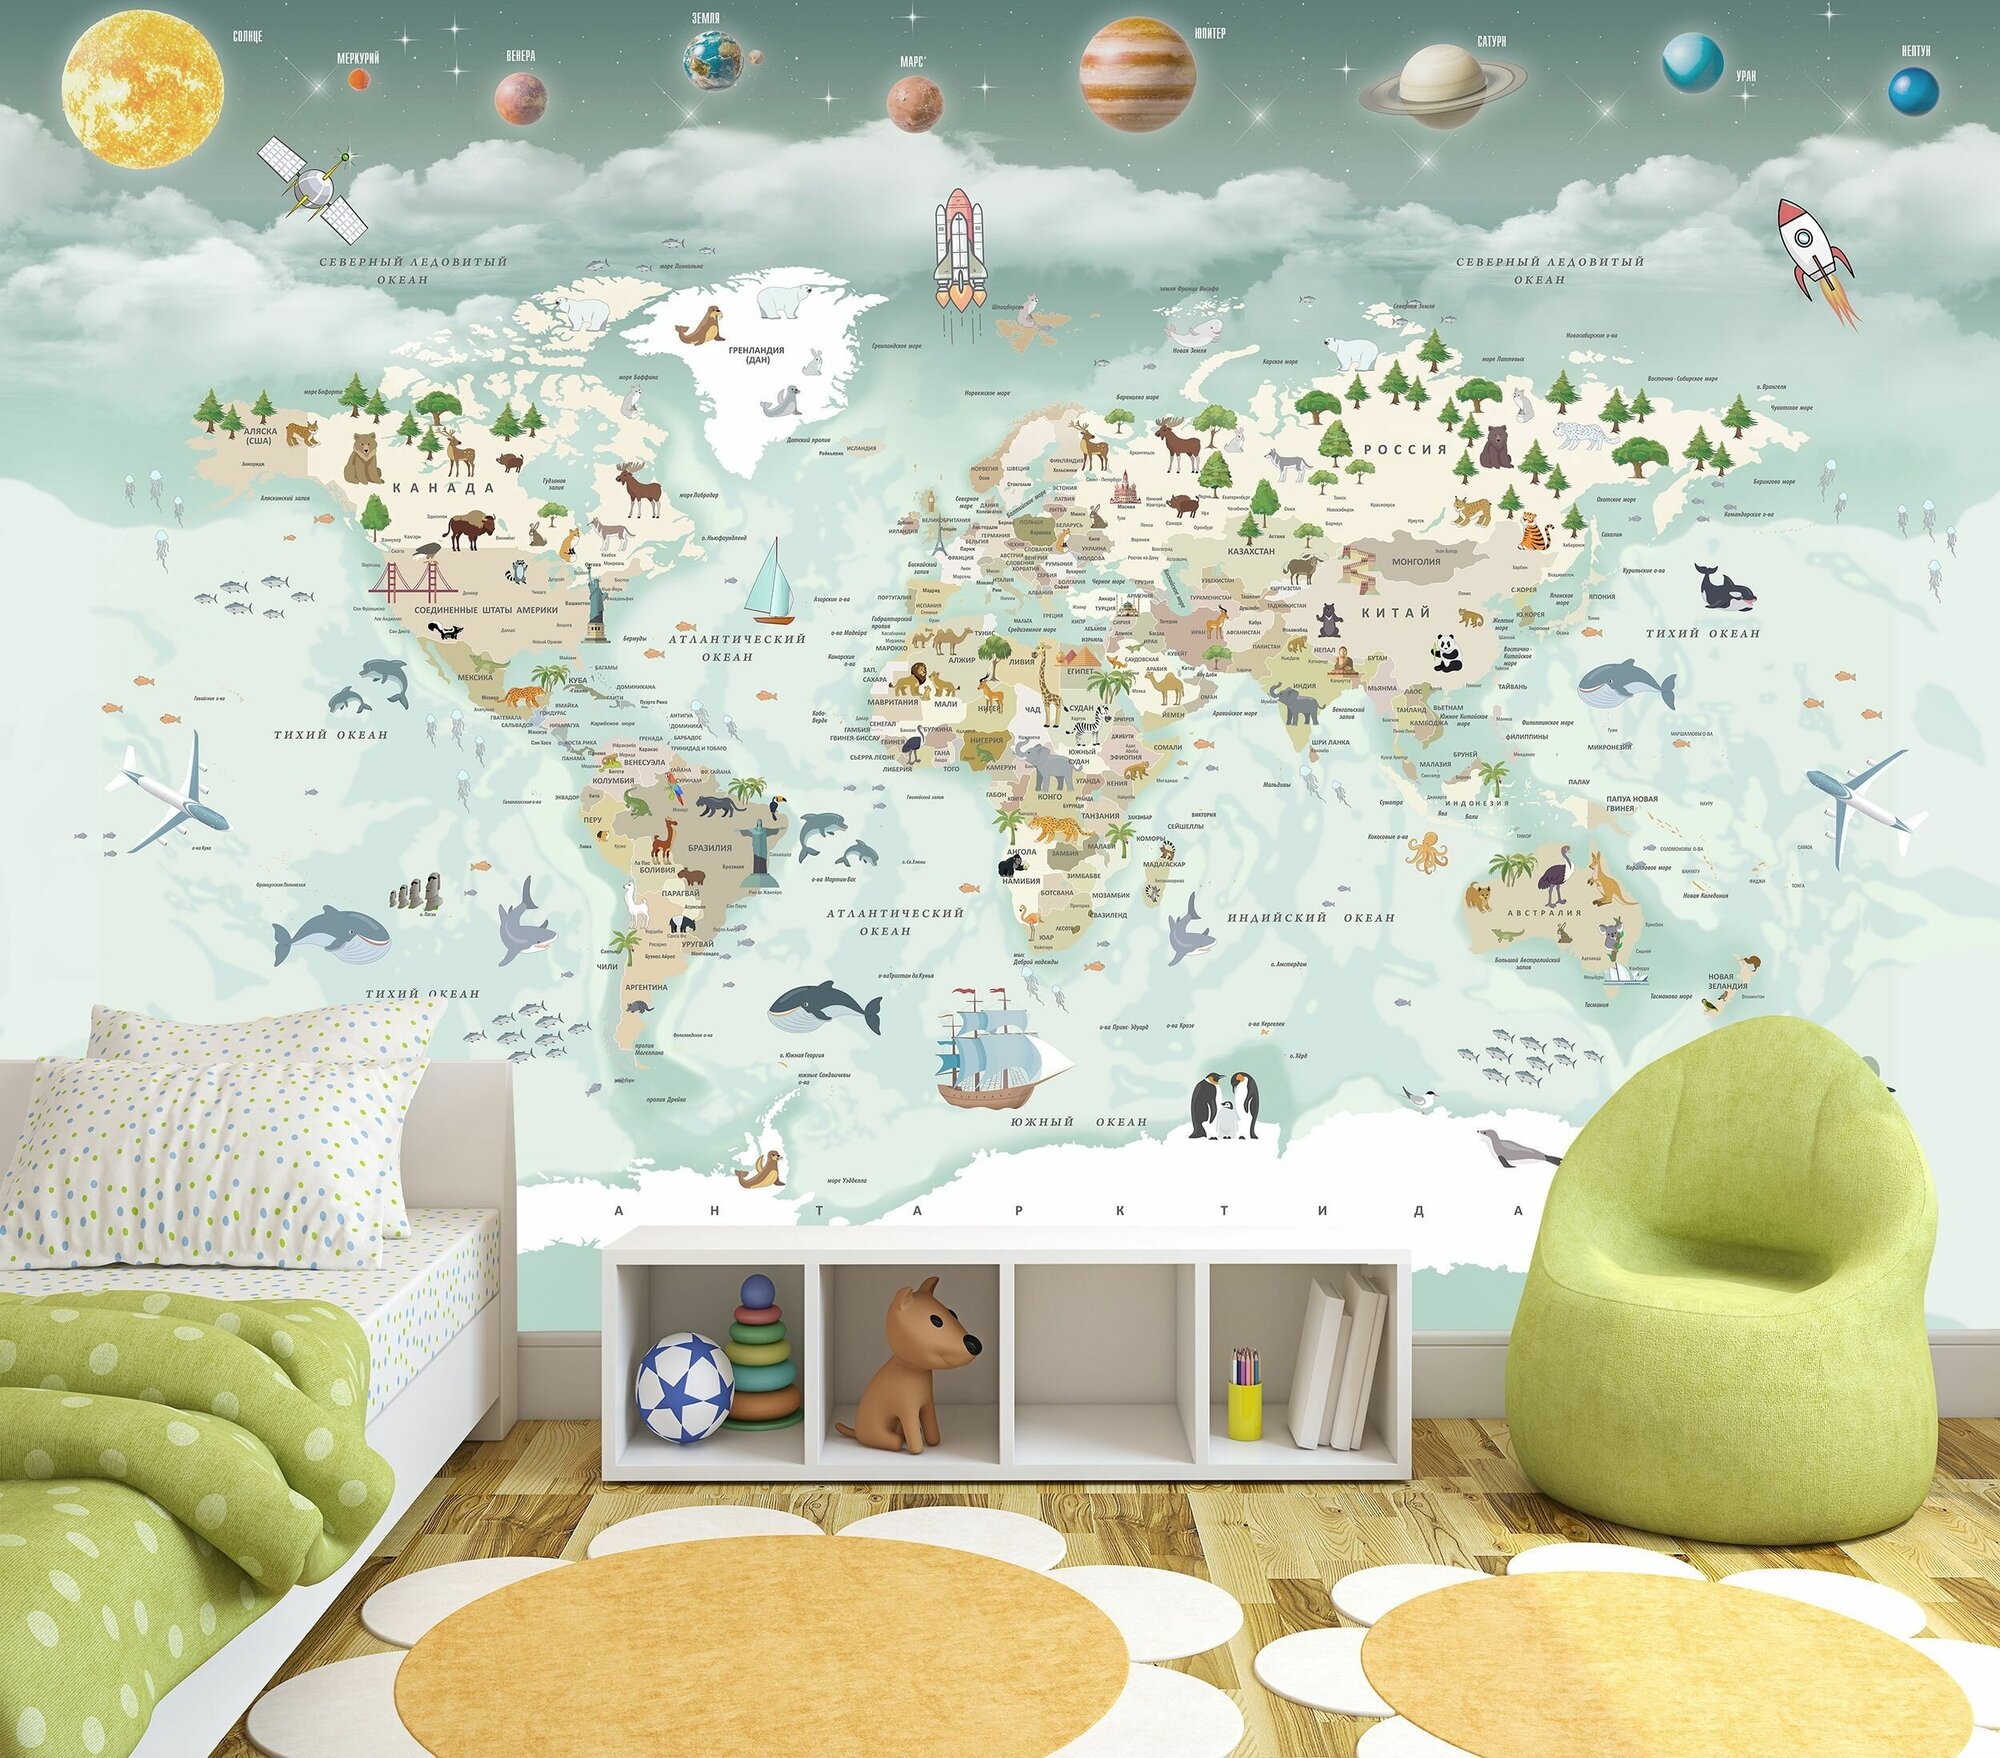 Фотообои флизелиновые 300х190см. на стену. Серия MAPS ARTDELUXE. Детская карта мира и планеты. Обои дизайнерские, эксклюзивные для детской комнаты.